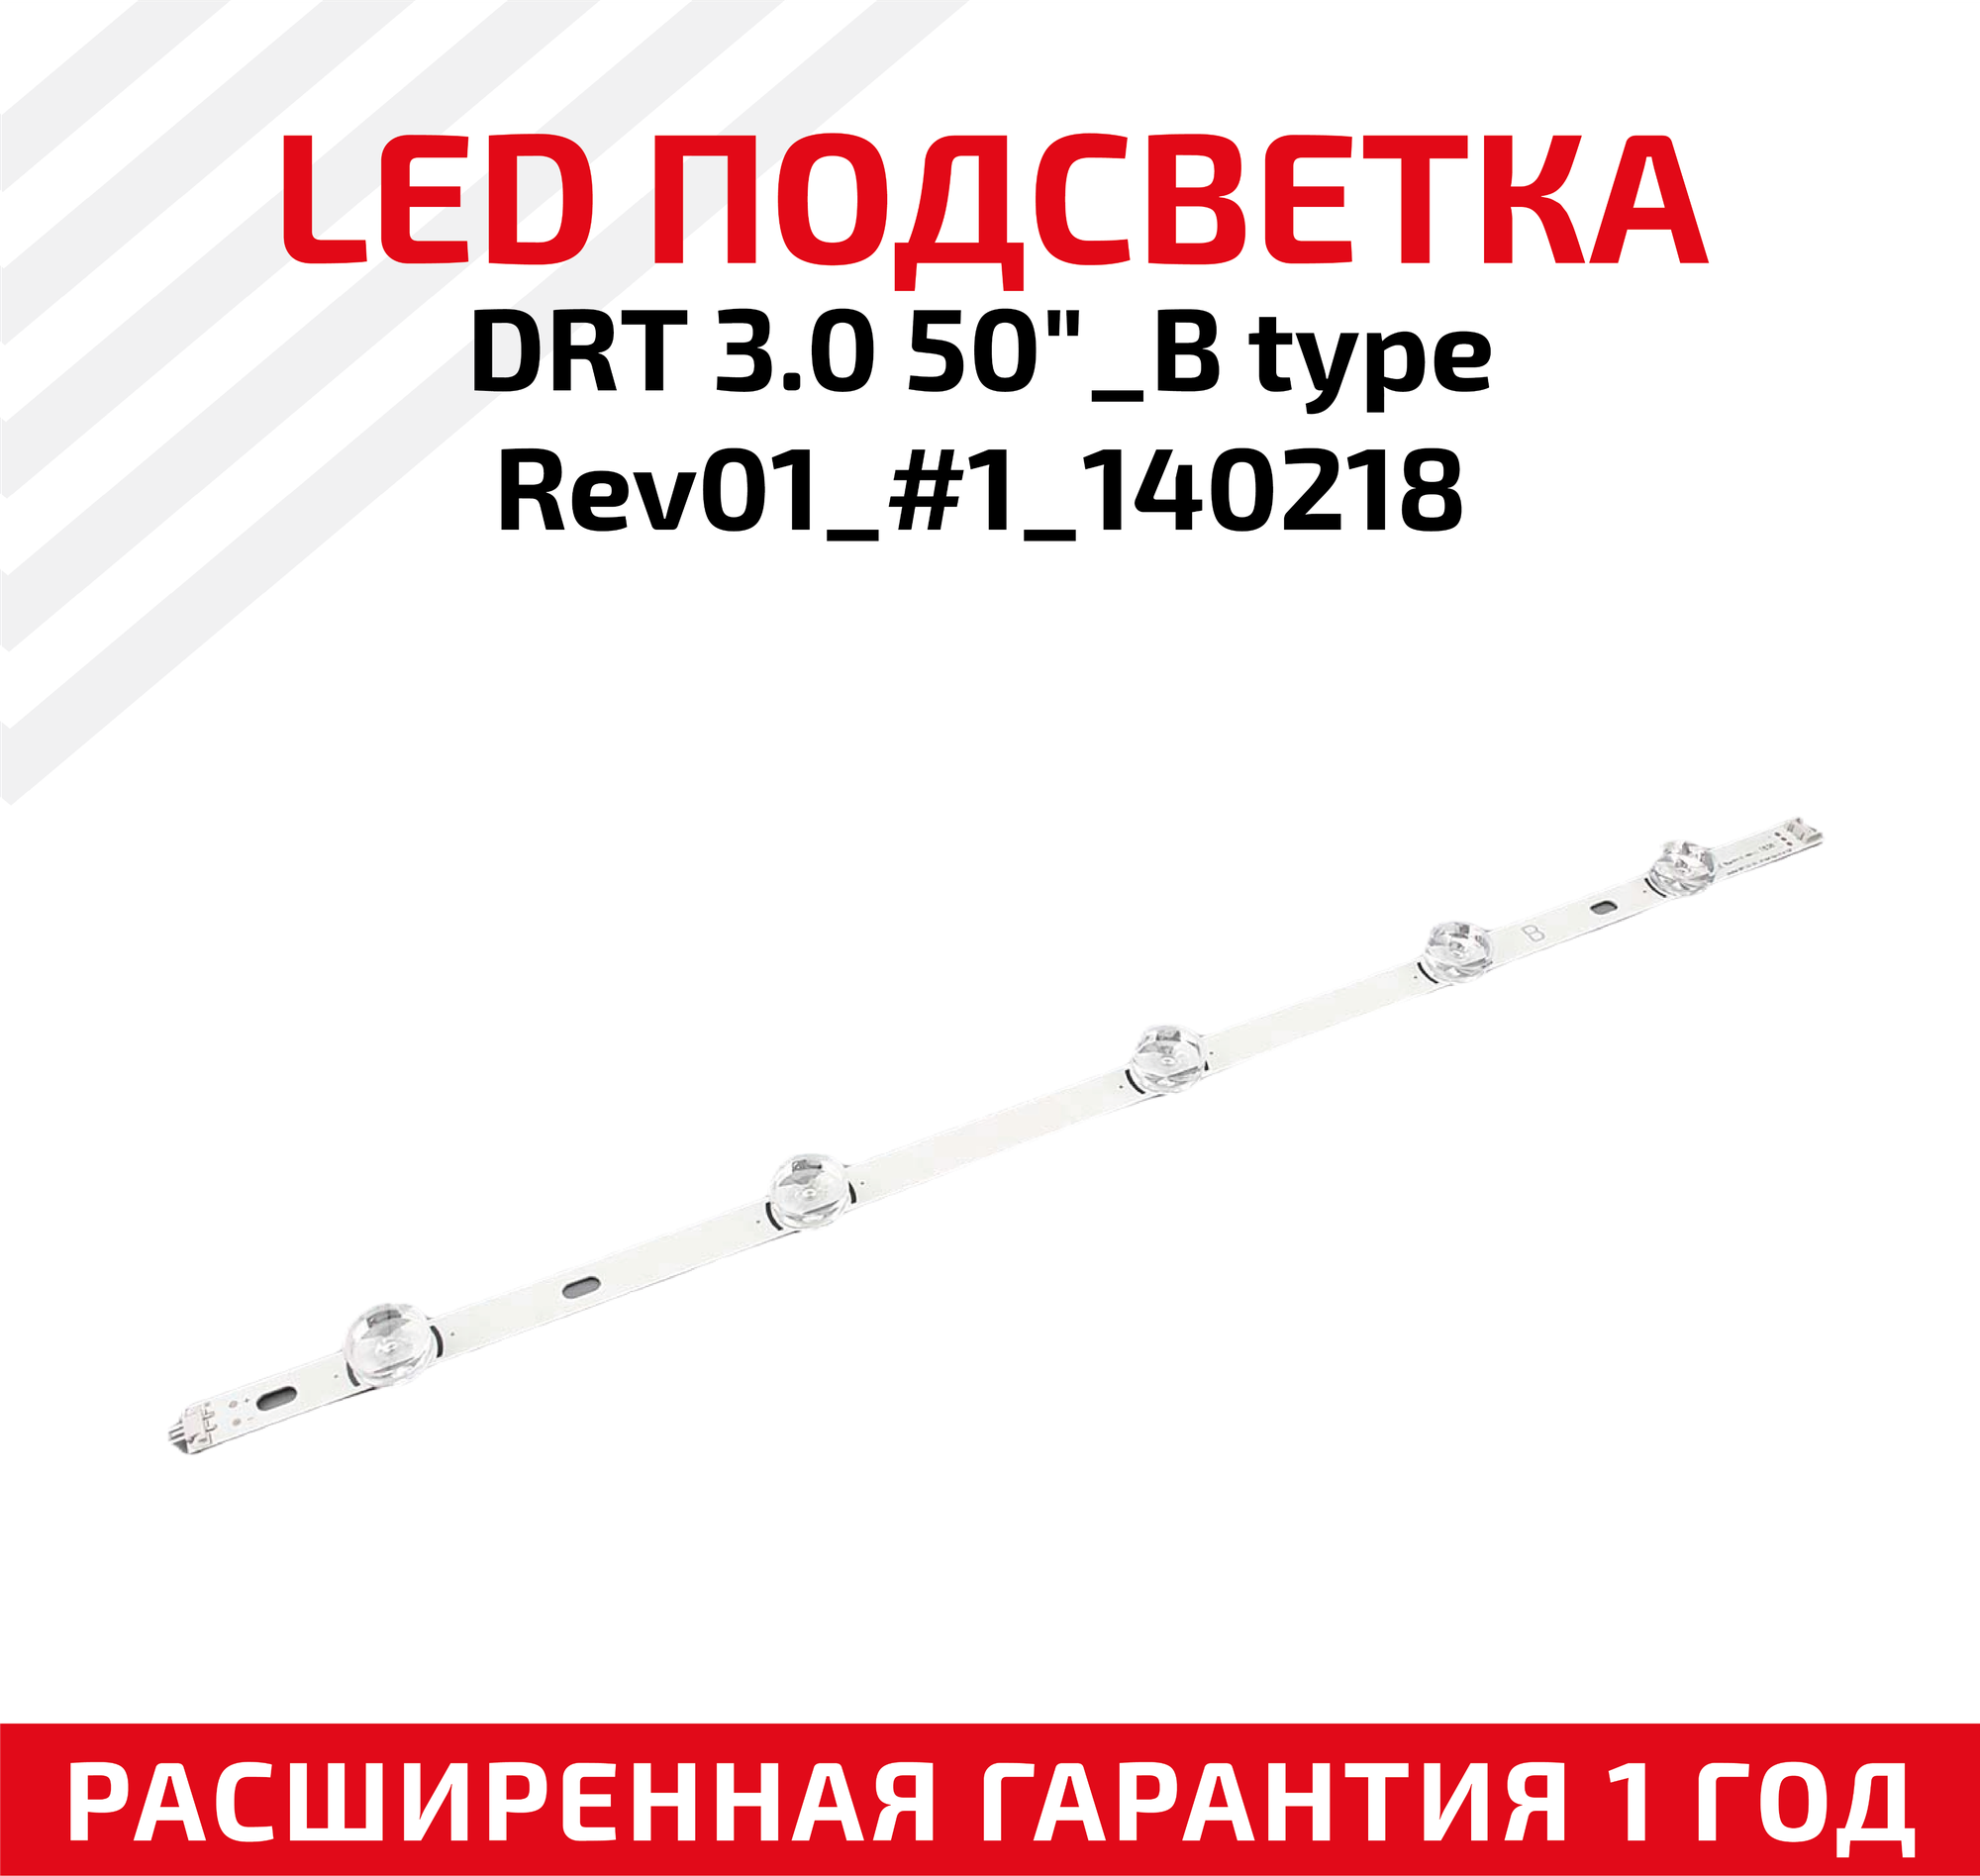 LED подсветка (светодиодная планка) для телевизора DRT 30 50"_B type Rev01_#1_140218